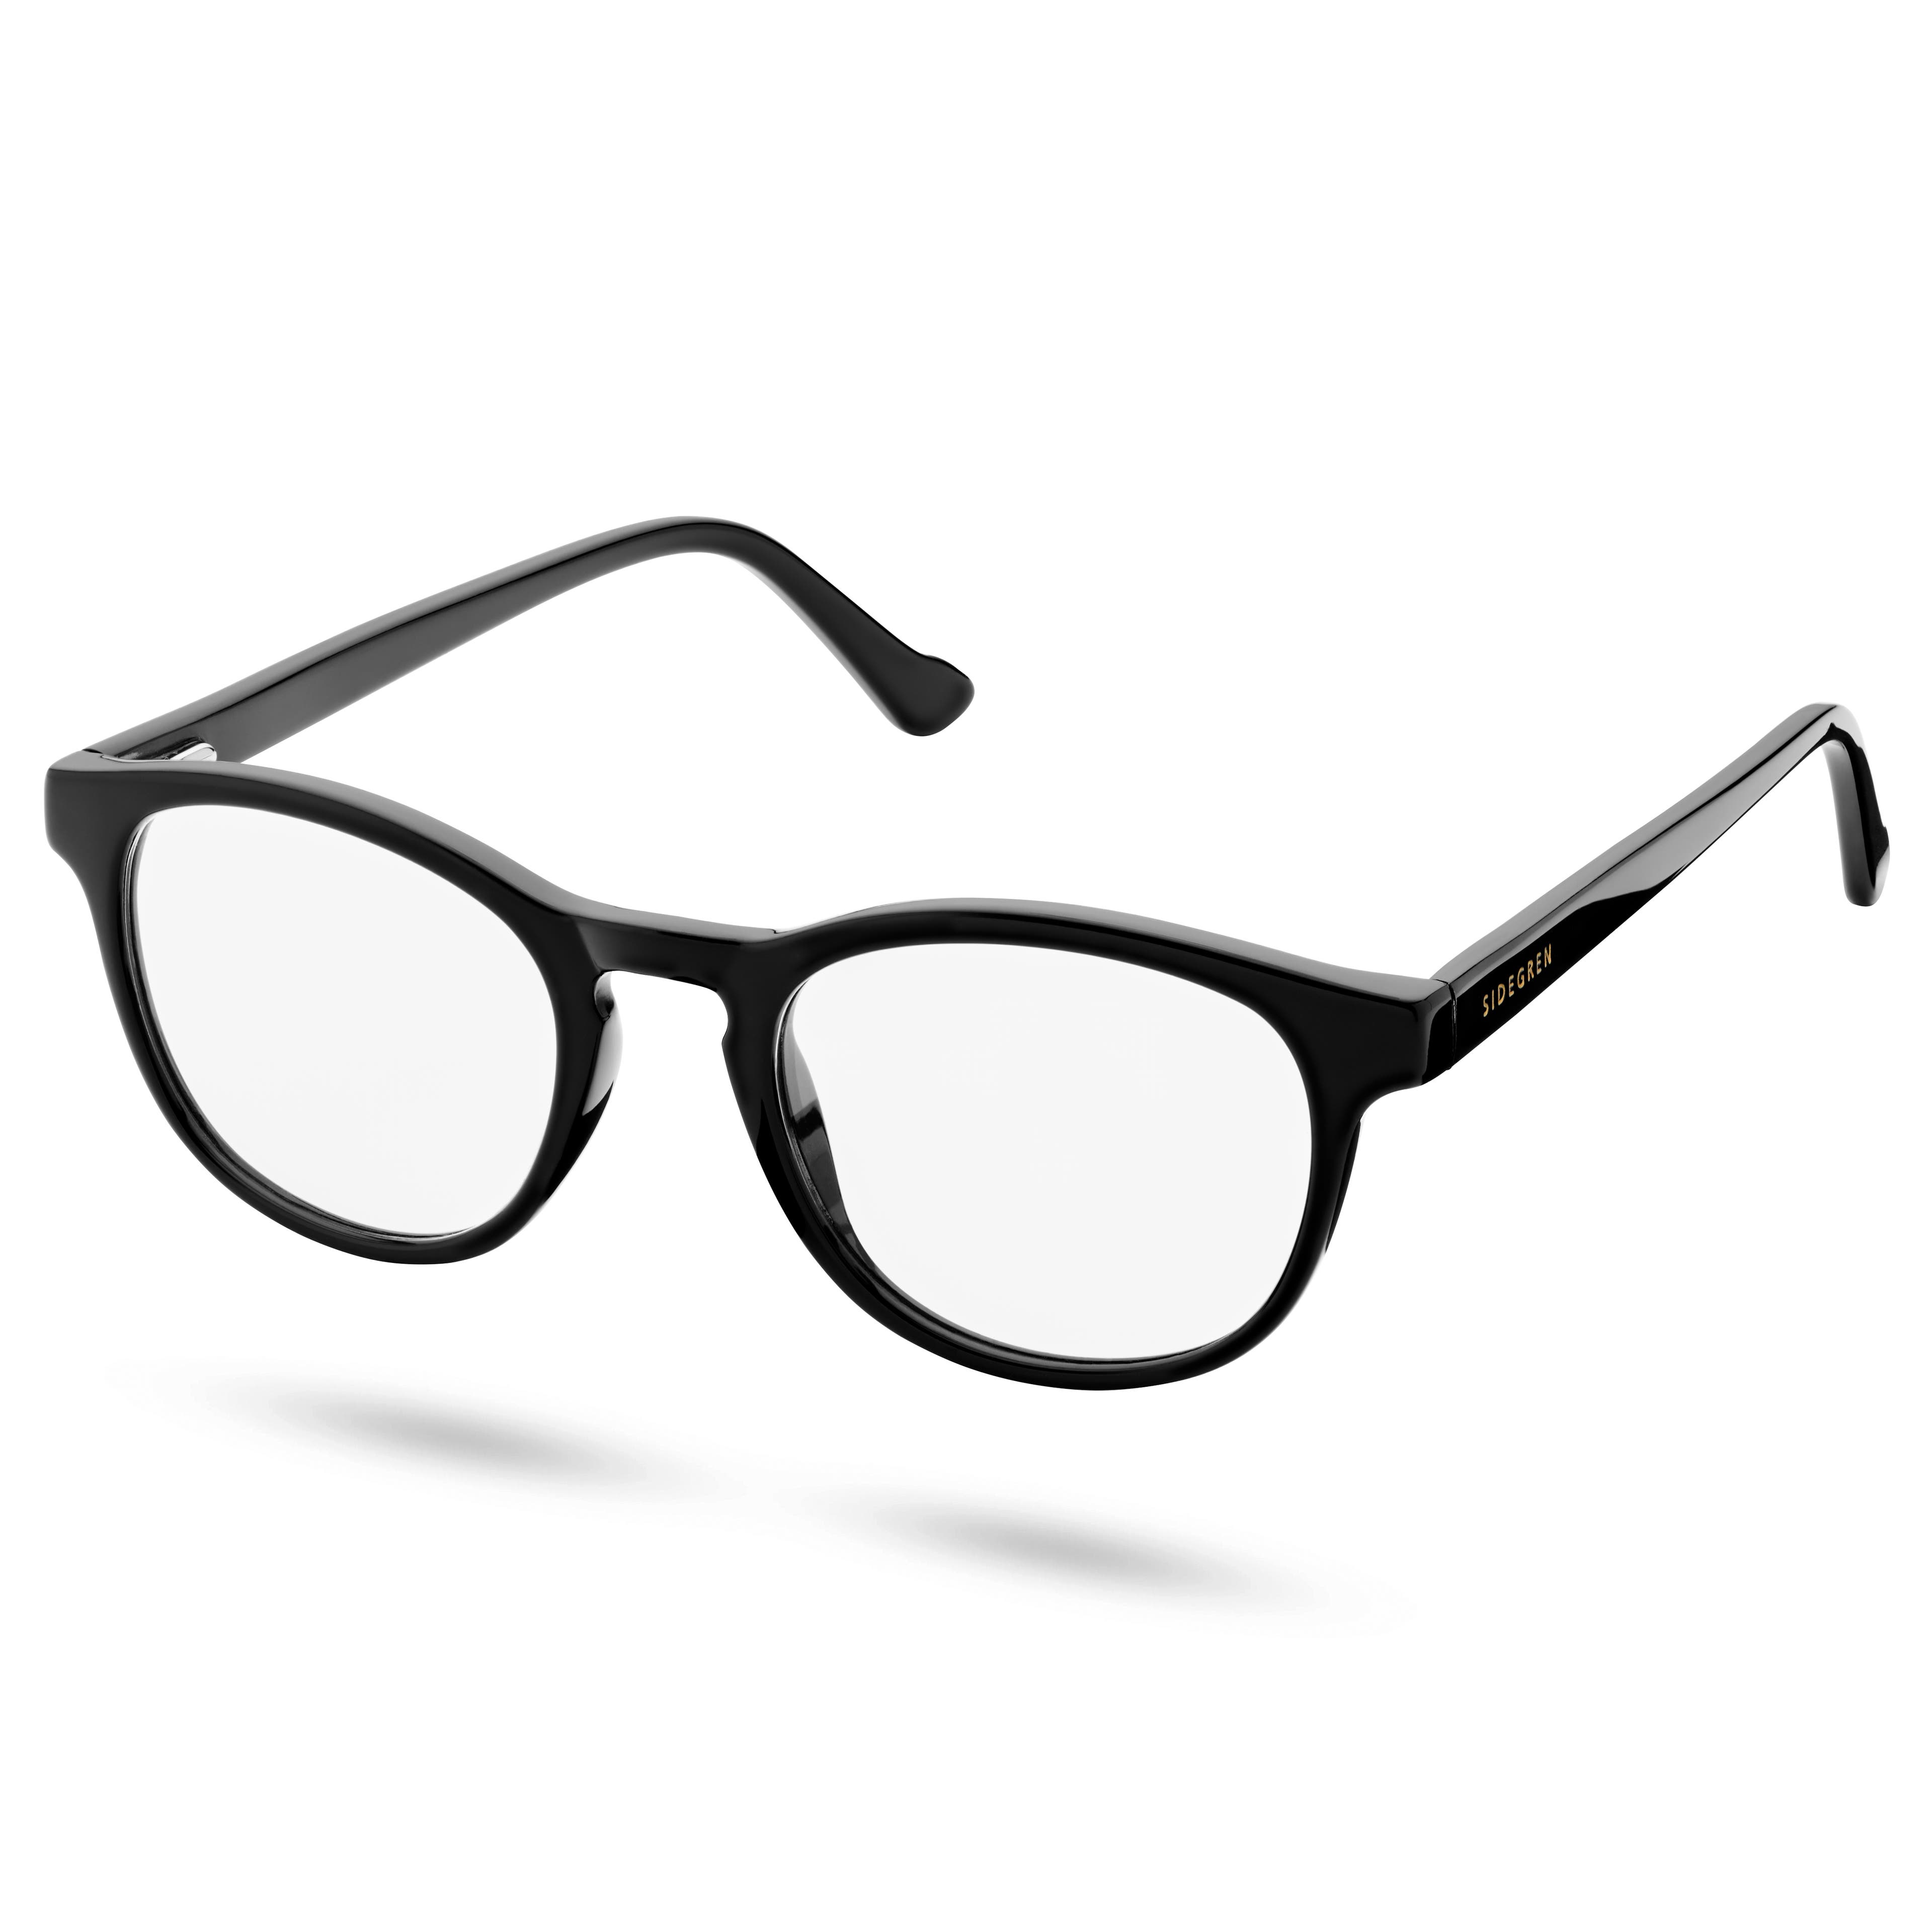 Klasické černé brýle s čirými čočkami blokující modré světlo